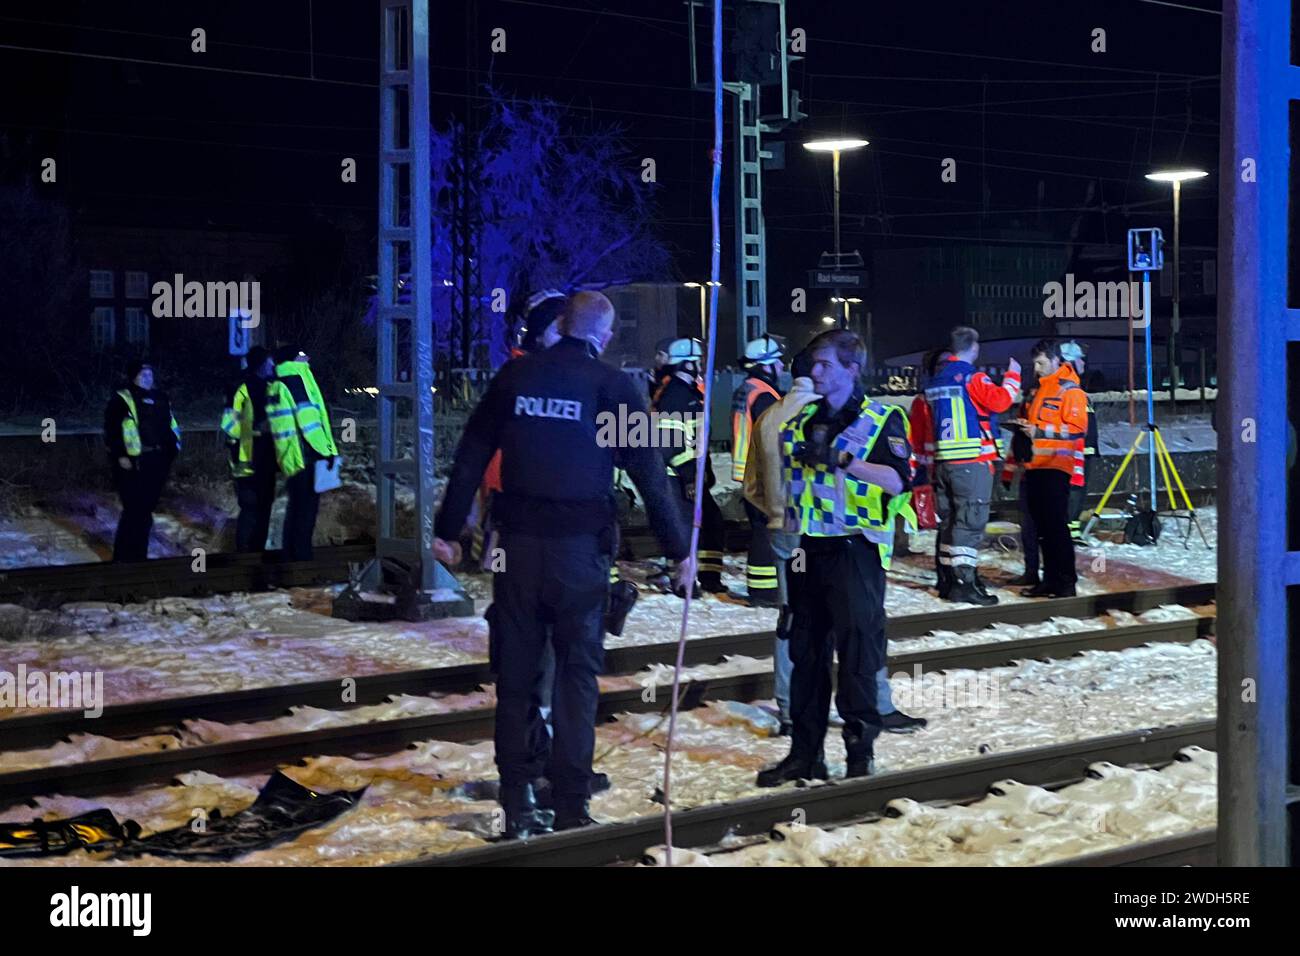 18-jähriger erleidet Stromschlag auf S-Bahn in Bad Homburg Ein 18-jähriger ist am frühen Sonntagmorgen 21.01.2024 durch einen Stromschlag aus einer Oberleitung lebensgefährlich verletzt worden. Aus ungeklärter Ursache war der junge Erwachsene auf eine S-Bahn im Bahnhof Bad Homburg geklettert. Er wurde durch die Feuerwehr gerettet und kam in ein Krankenhaus. Die Polizei ermittelt. *** 18-year-old suffers electric shock on suburban train in Bad Homburg An 18-year-old was critically injured by an electric shock from an overhead line early on Sunday morning 21 01 2024 For unknown reasons, the youn Stock Photo